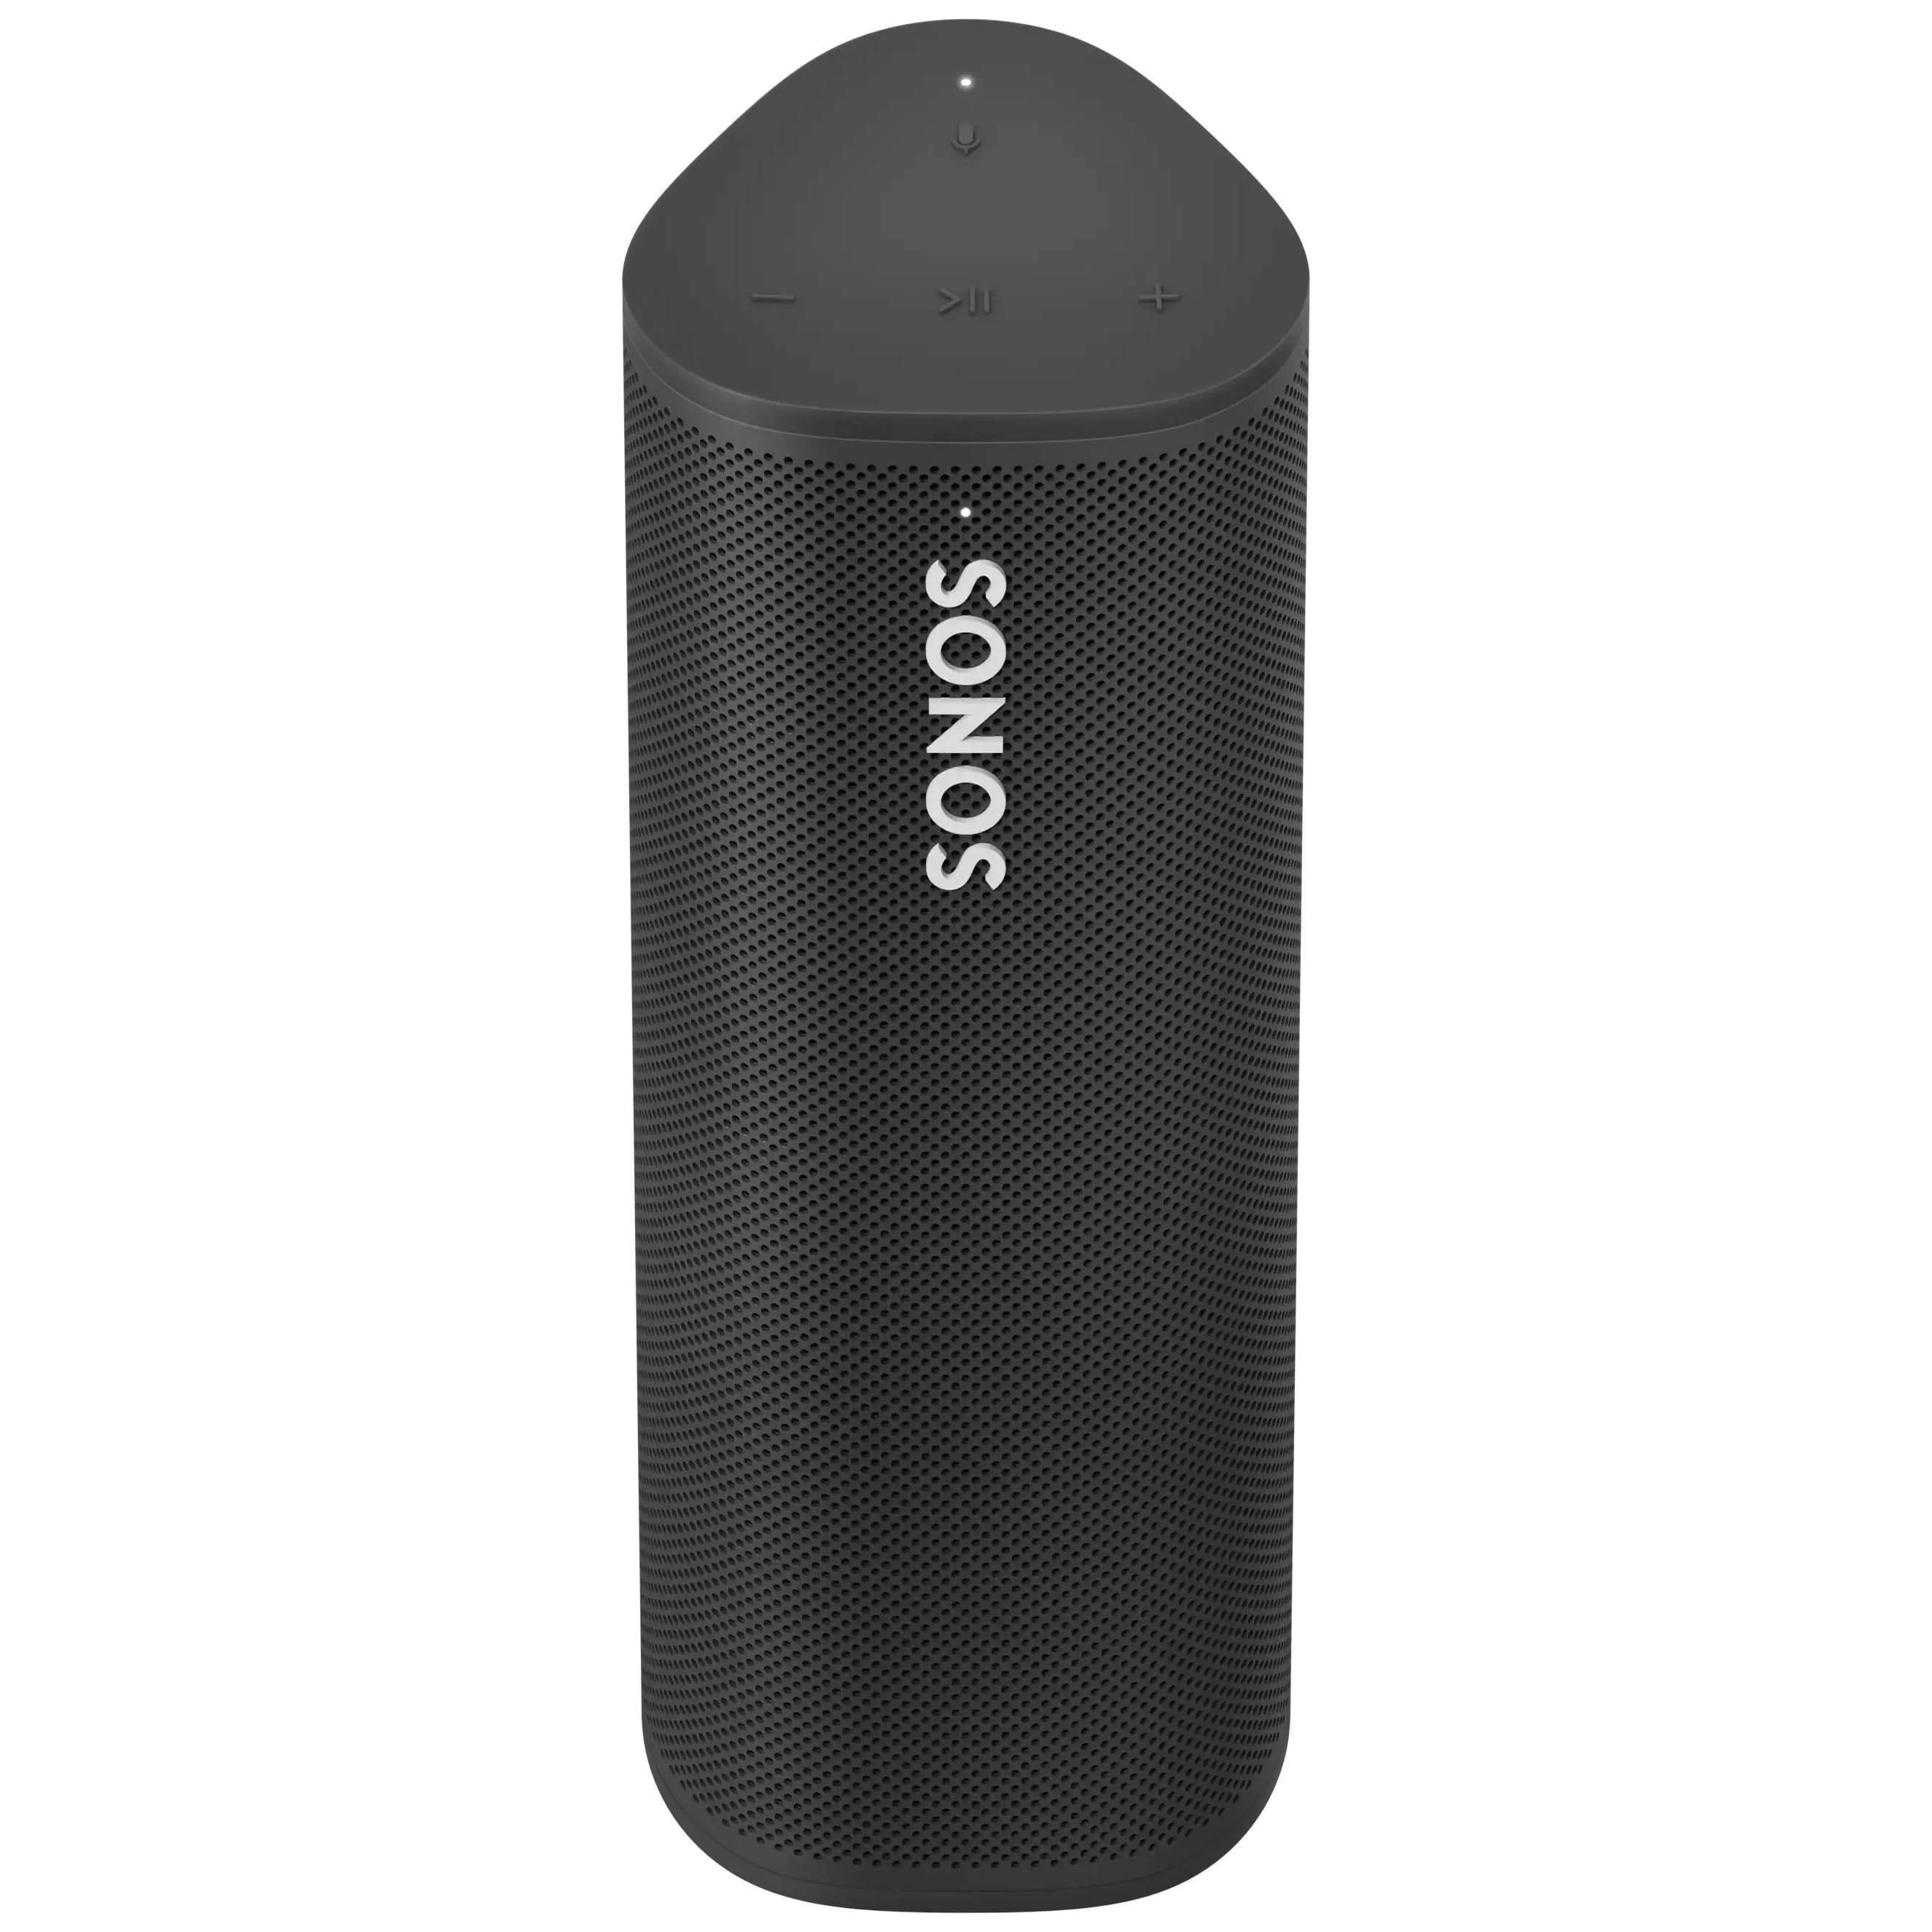 Sonos Roam - A Portable Waterproof Smart Speaker